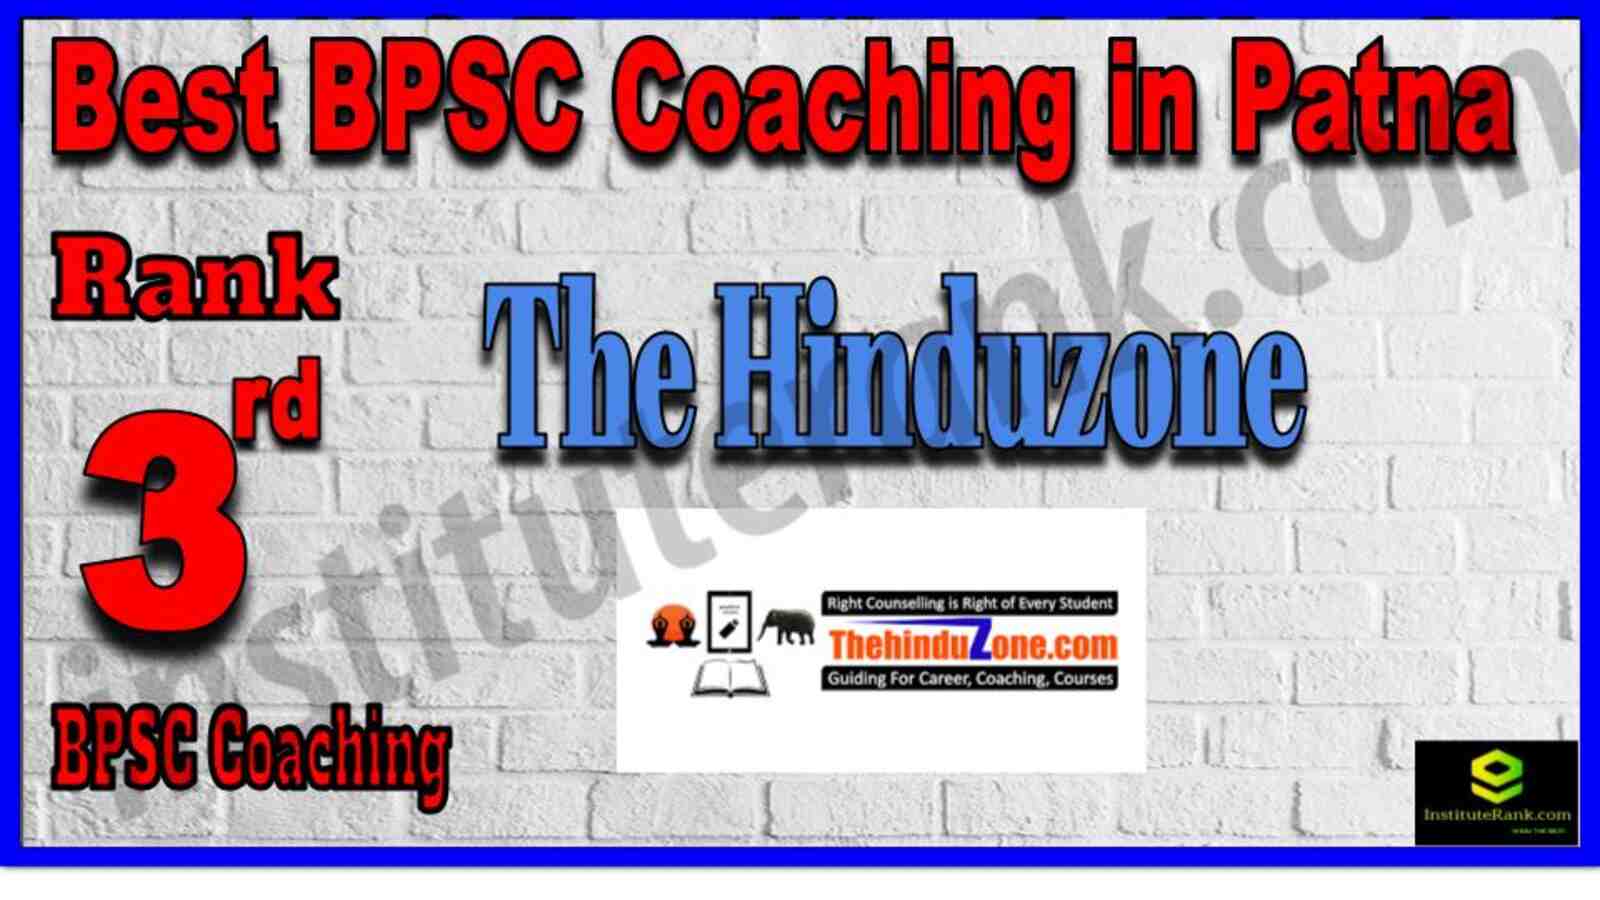 Rank 3 Best BPSC Coaching Institute in Patna